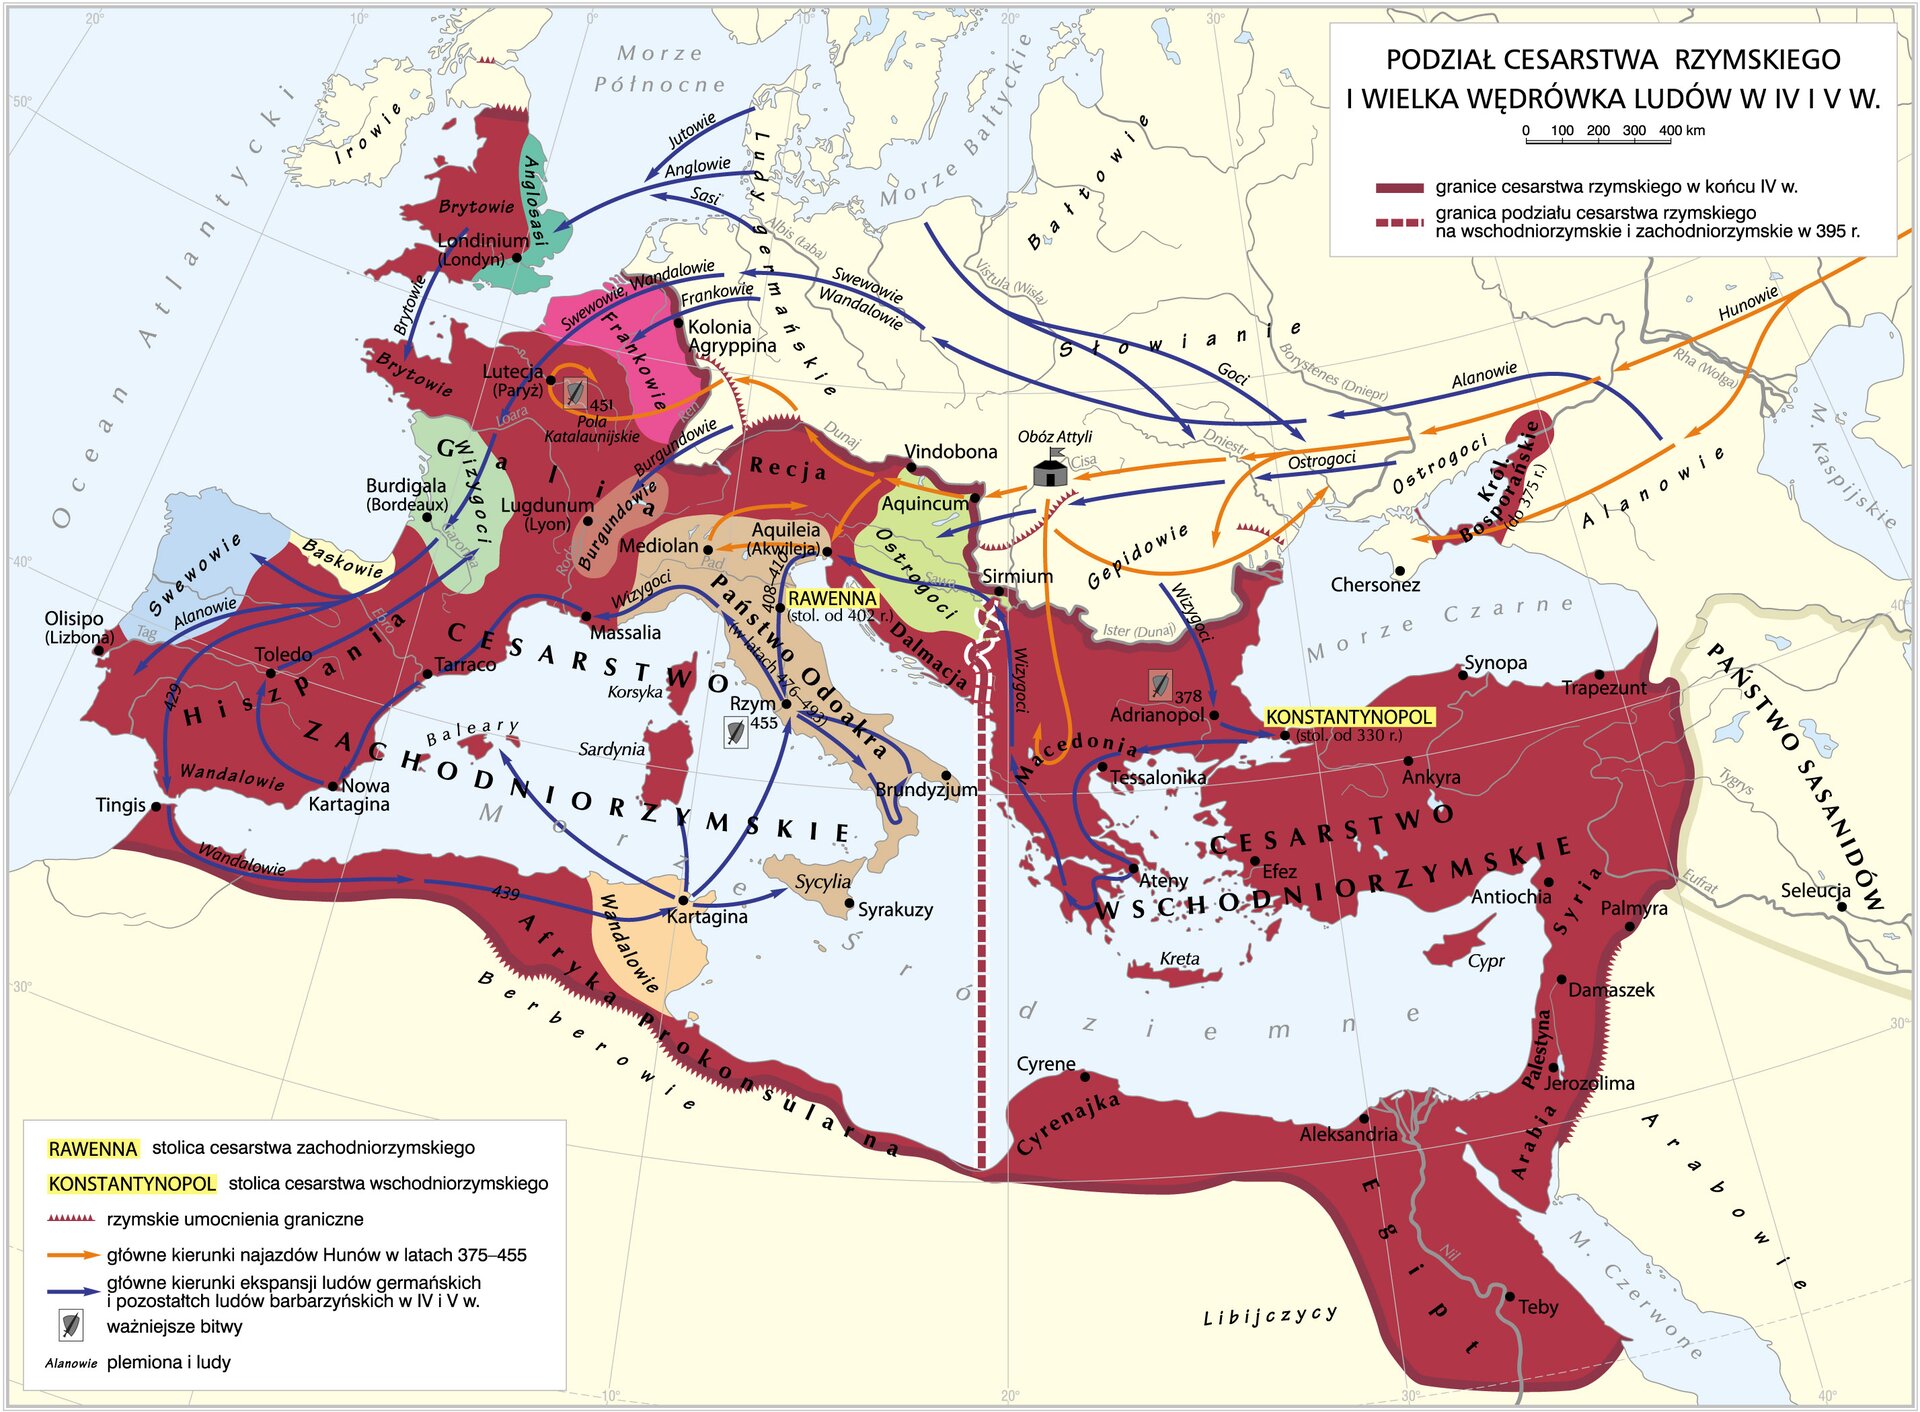 Mapa przedstawiająca wielką wędrówkę ludów. Kolorem ciemnoczerwonym oznaczono terytorium cesarstwa rzymskiego, obejmujące obszar dookoła basenu Morza Śródziemnego, Oceanu Atlantyckiego (Hiszpania i Francja) aż po Brytanię do linii Muru Hadriana. Liniami ze strzałką oznaczono kierunki wędrówki ludów. Niebieską linią w kierunku Europy Zachodniej i Brytanii, następnie Afryki Północnej, Italii i Półwyspu Bałkańskiego prowadzone są kierunki marszu następujących plemion: Alanów, Gotów, Ostrogotów, Wizygotów, Swewów, Wandalów, Anglów, Jutów, Sasów, Burgundów. Ziemie dawnego cesarstwa rzymskiego opanowały następujące plemiona: od zachodu - Swewowie, Baskowie, Wizygoci, Frankowie, Burgundowie, Wandalowie, Ostrogoci. Italię oznaczono beżowym kolorem jako "Państwo Odoakra". Namiotem czarnym w Europie Środkowej oznaczono obóz Attyli. Przerywaną, czerwoną linią oznaczono linię podziału na cesarstwo zachodniorzymskie i cesarstwo wschodniorzymskie. 